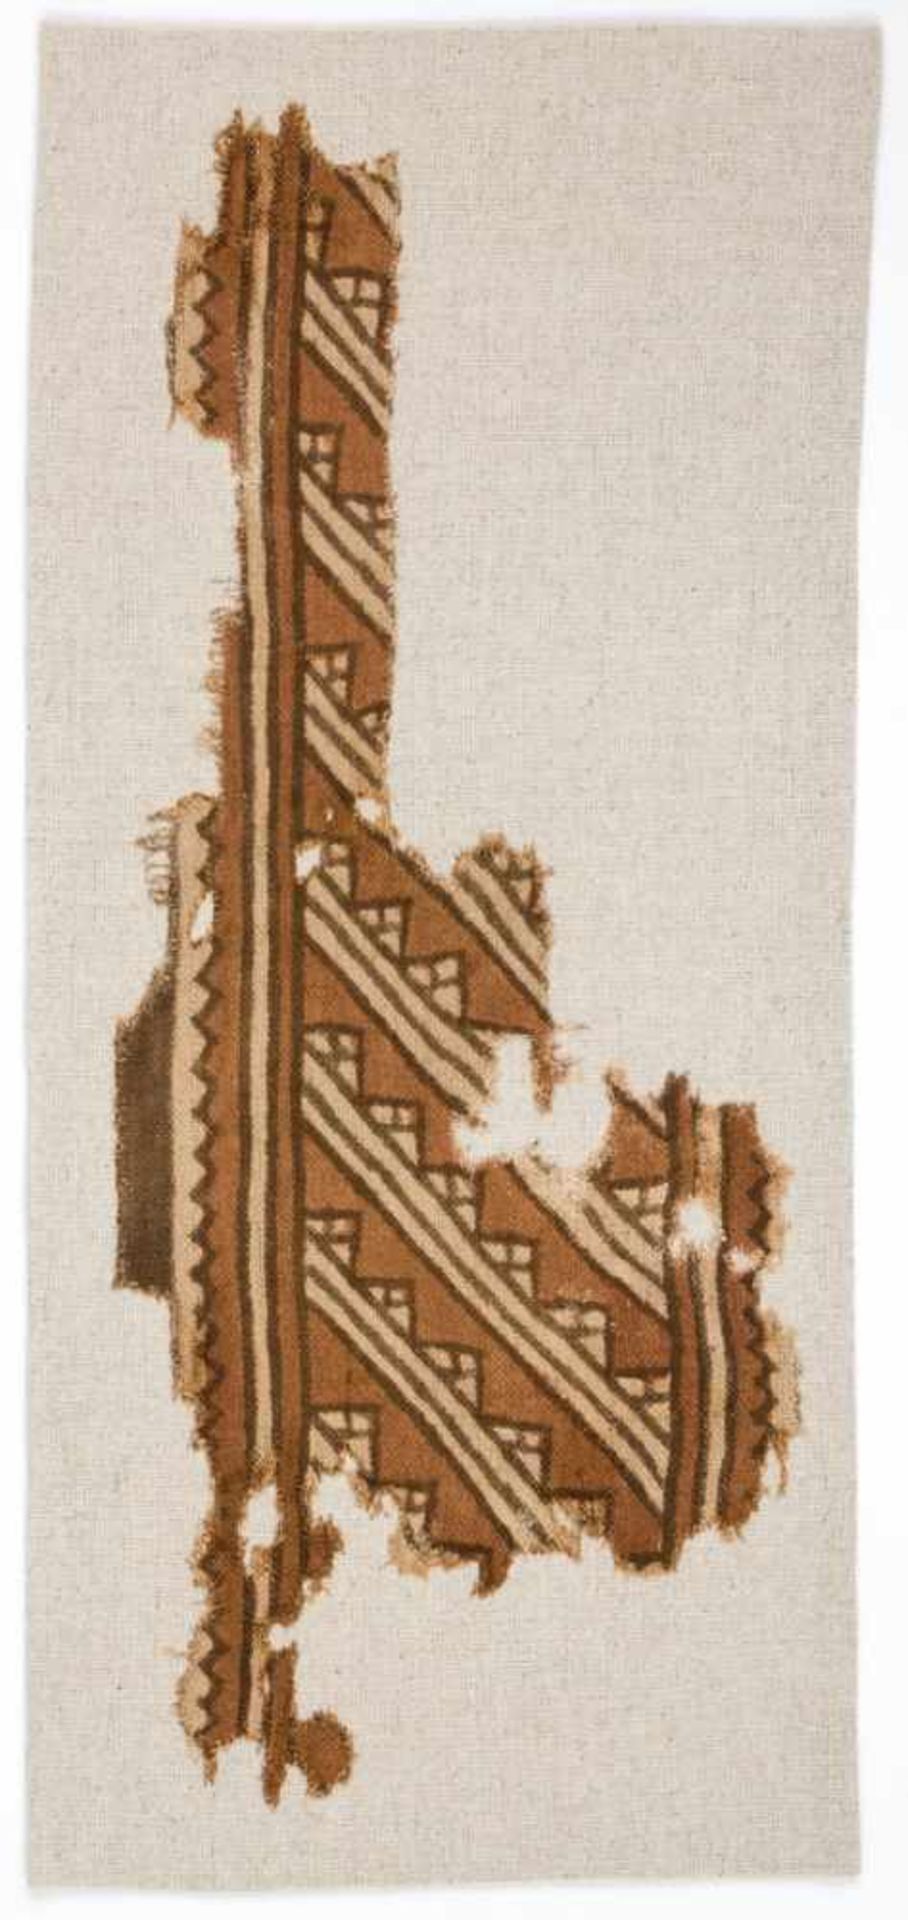 Altperuanisches Textilfragment nach Frau Dr. Hentschel: Baumwolle, Leinenbindung, Kette mit